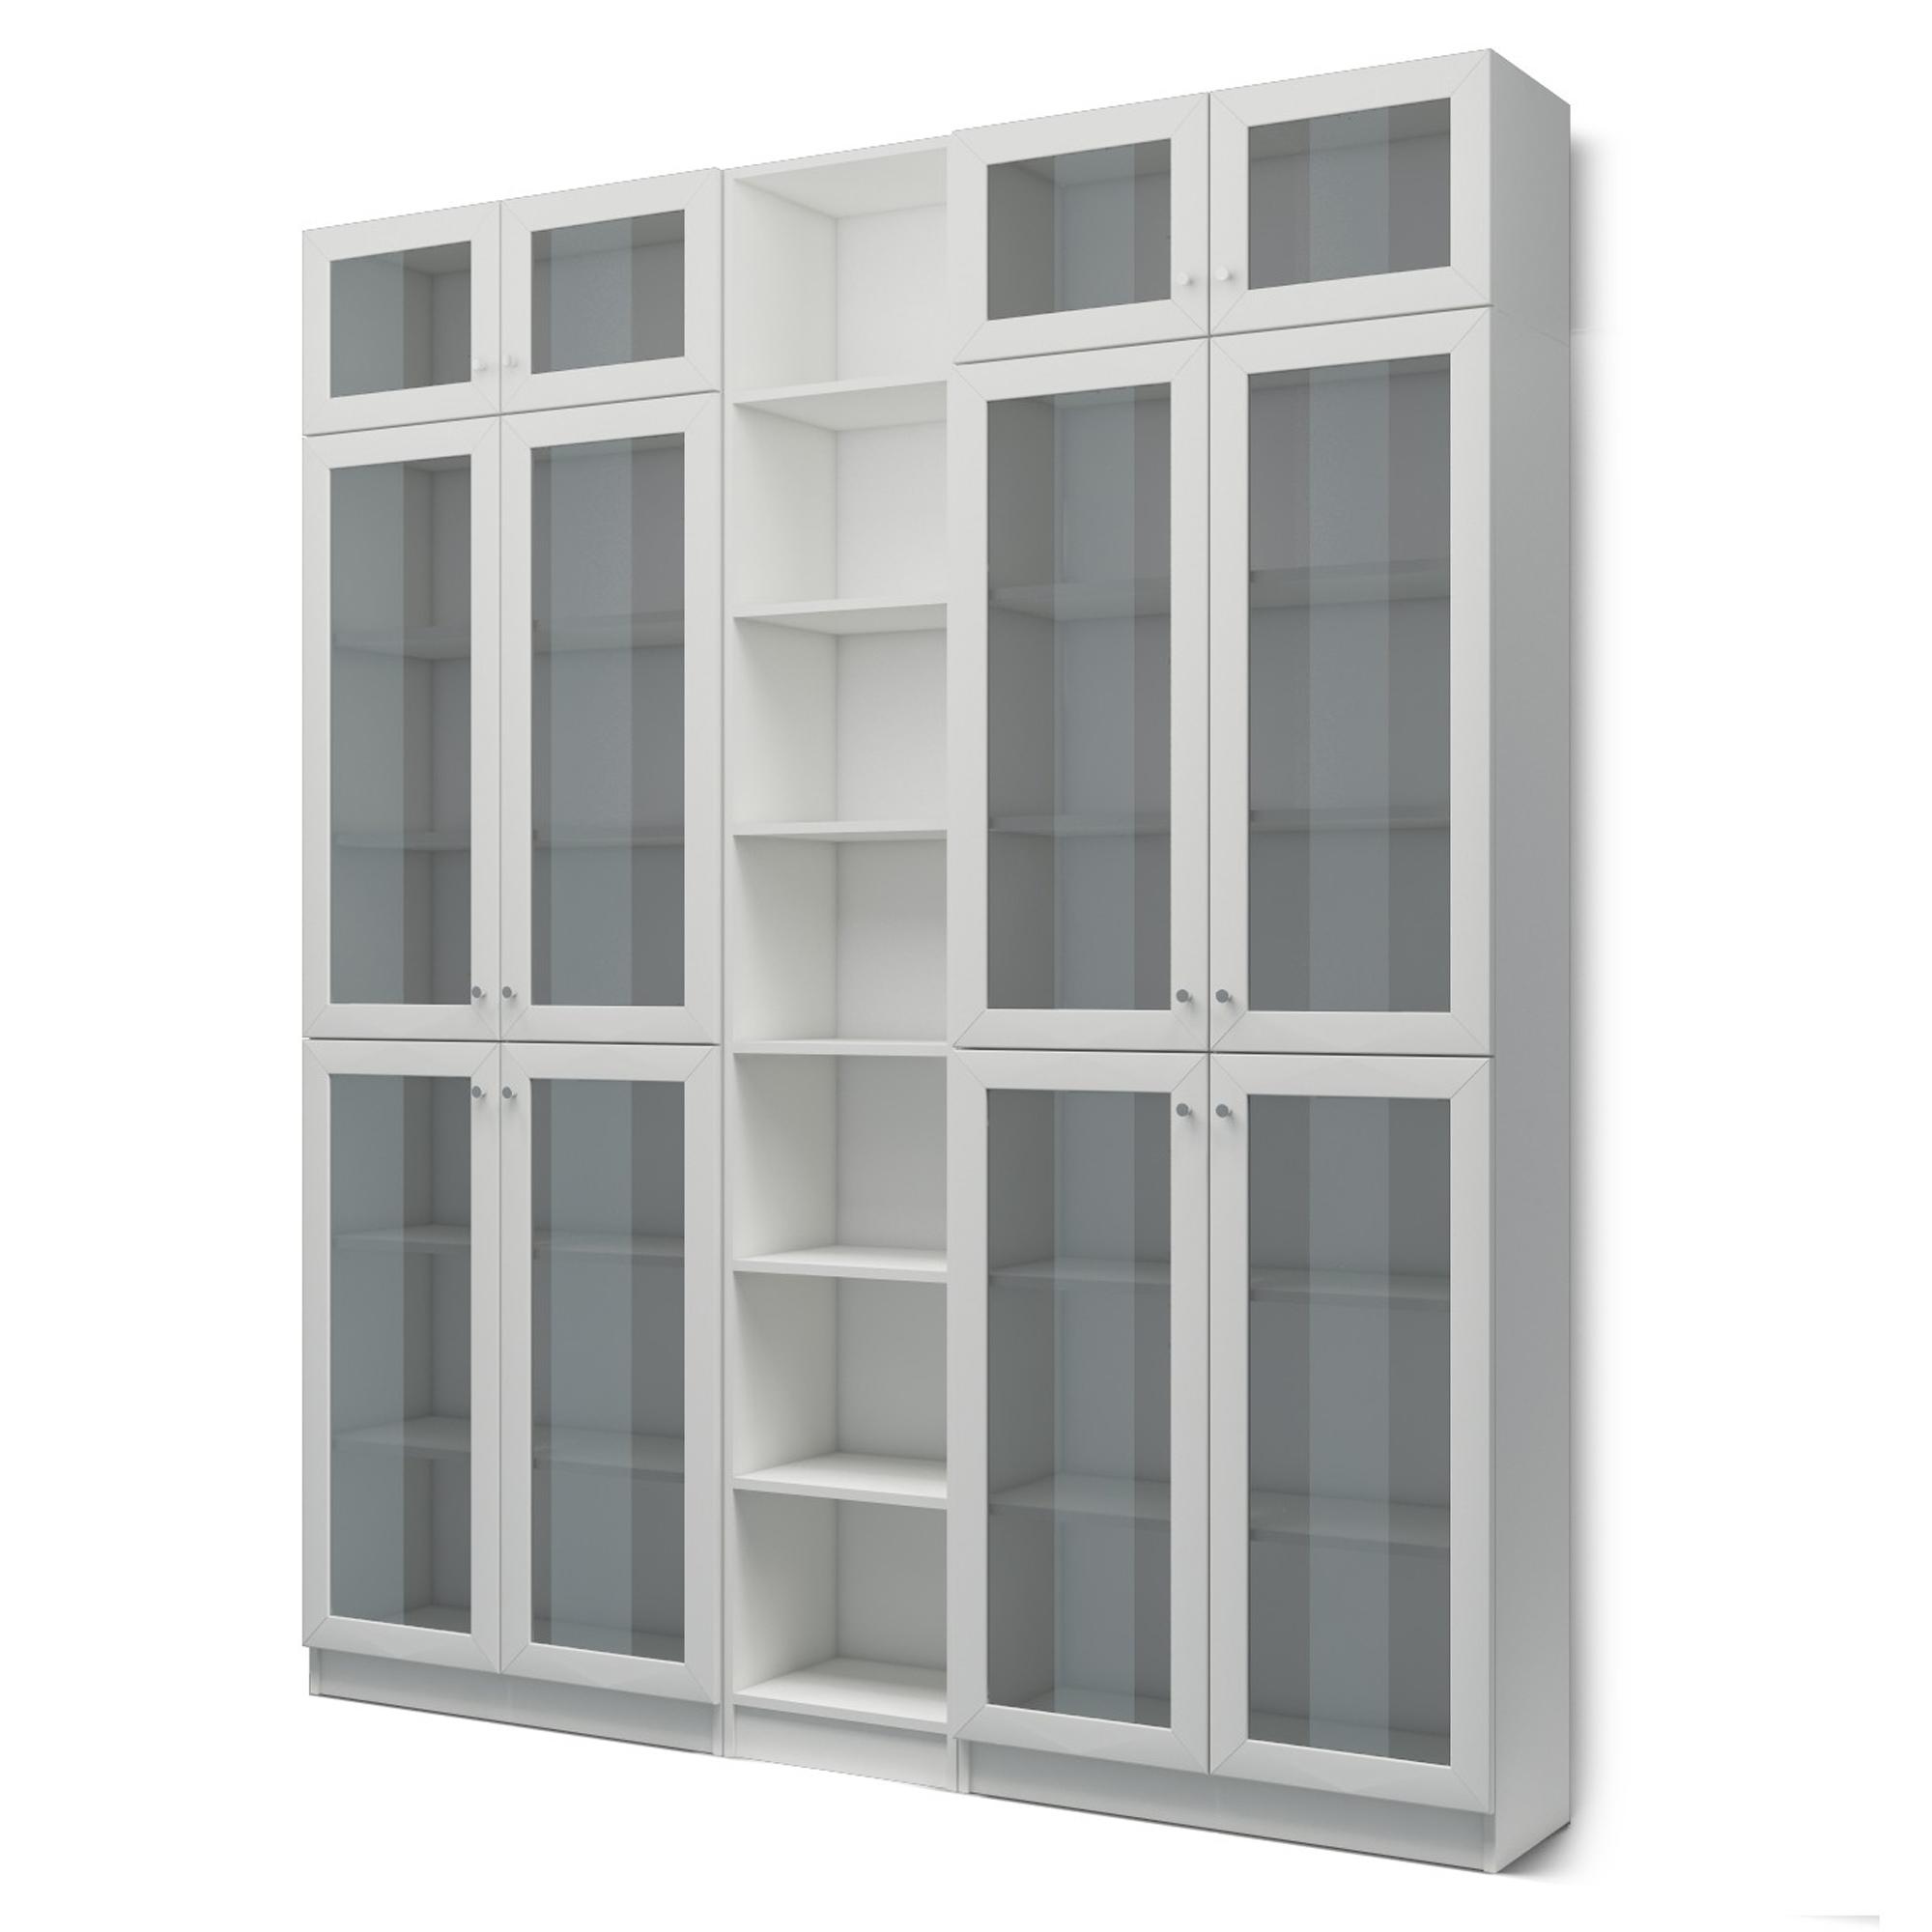 Книжный шкаф Билли 348 grey ИКЕА (IKEA) изображение товара